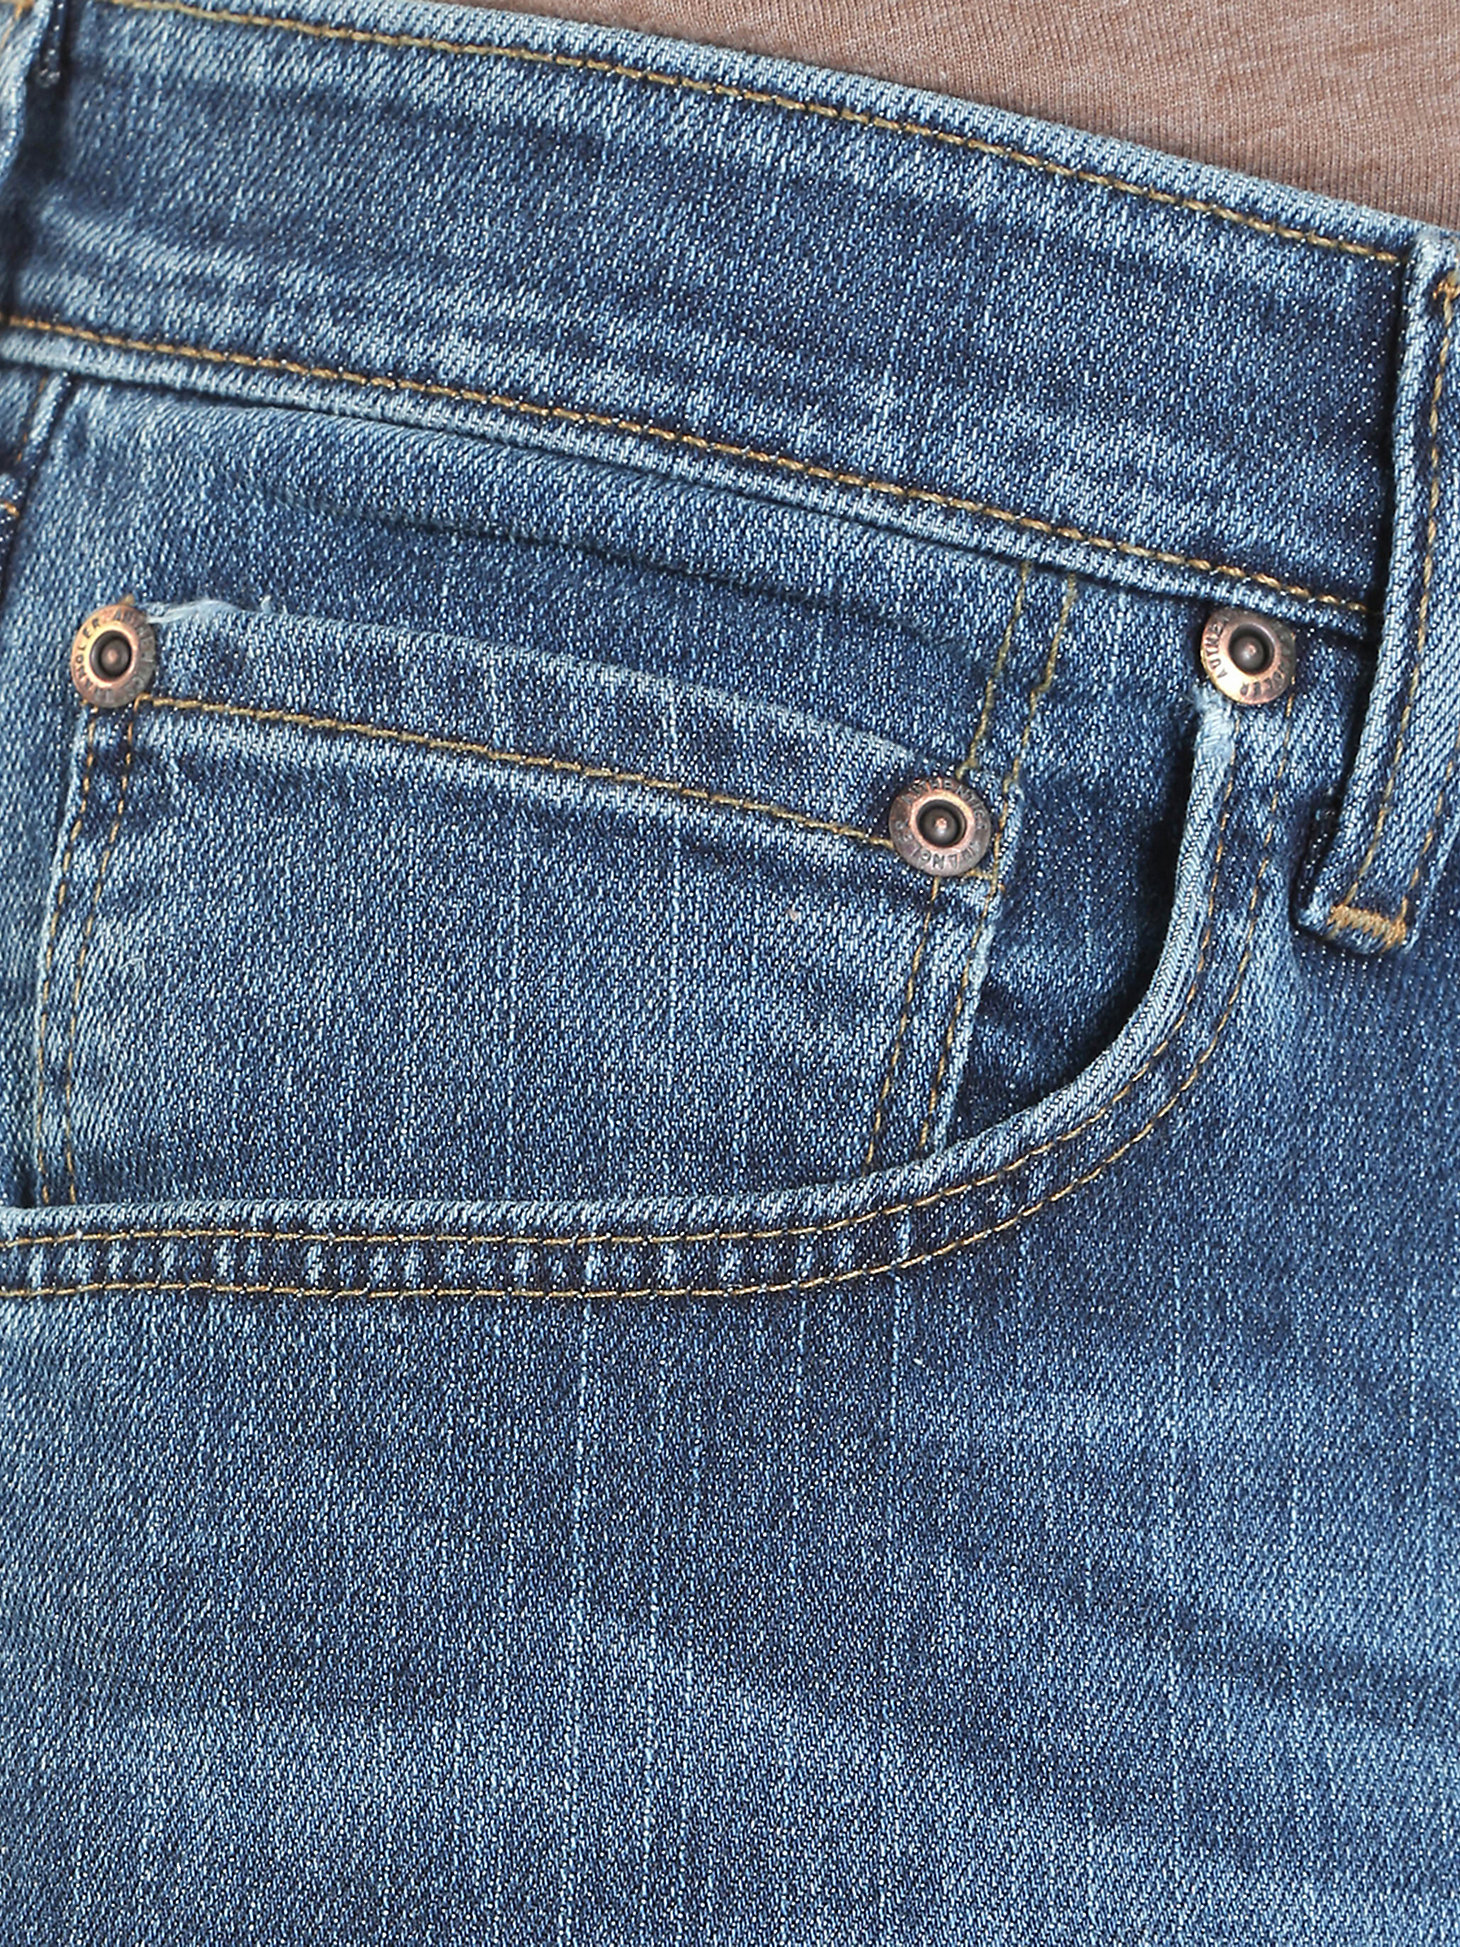 Men's Wrangler Authentics® Regular Fit Comfort Waist Jean in Blue Ocean alternative view 5